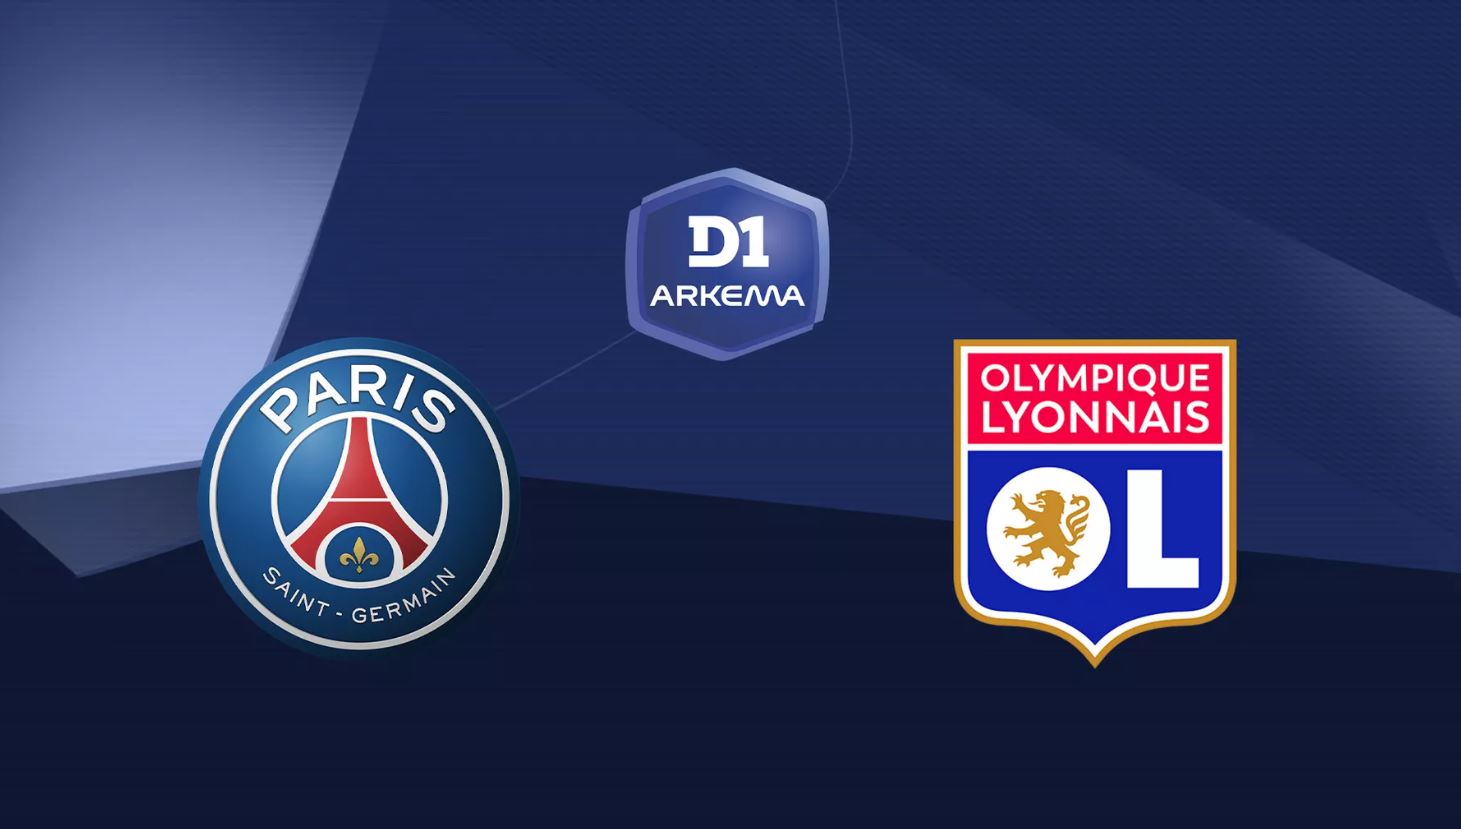 Paris SG / Lyon (TV/Streaming) Sur quelle chaîne et à quelle heure voir le match de D1 Arkéma ?